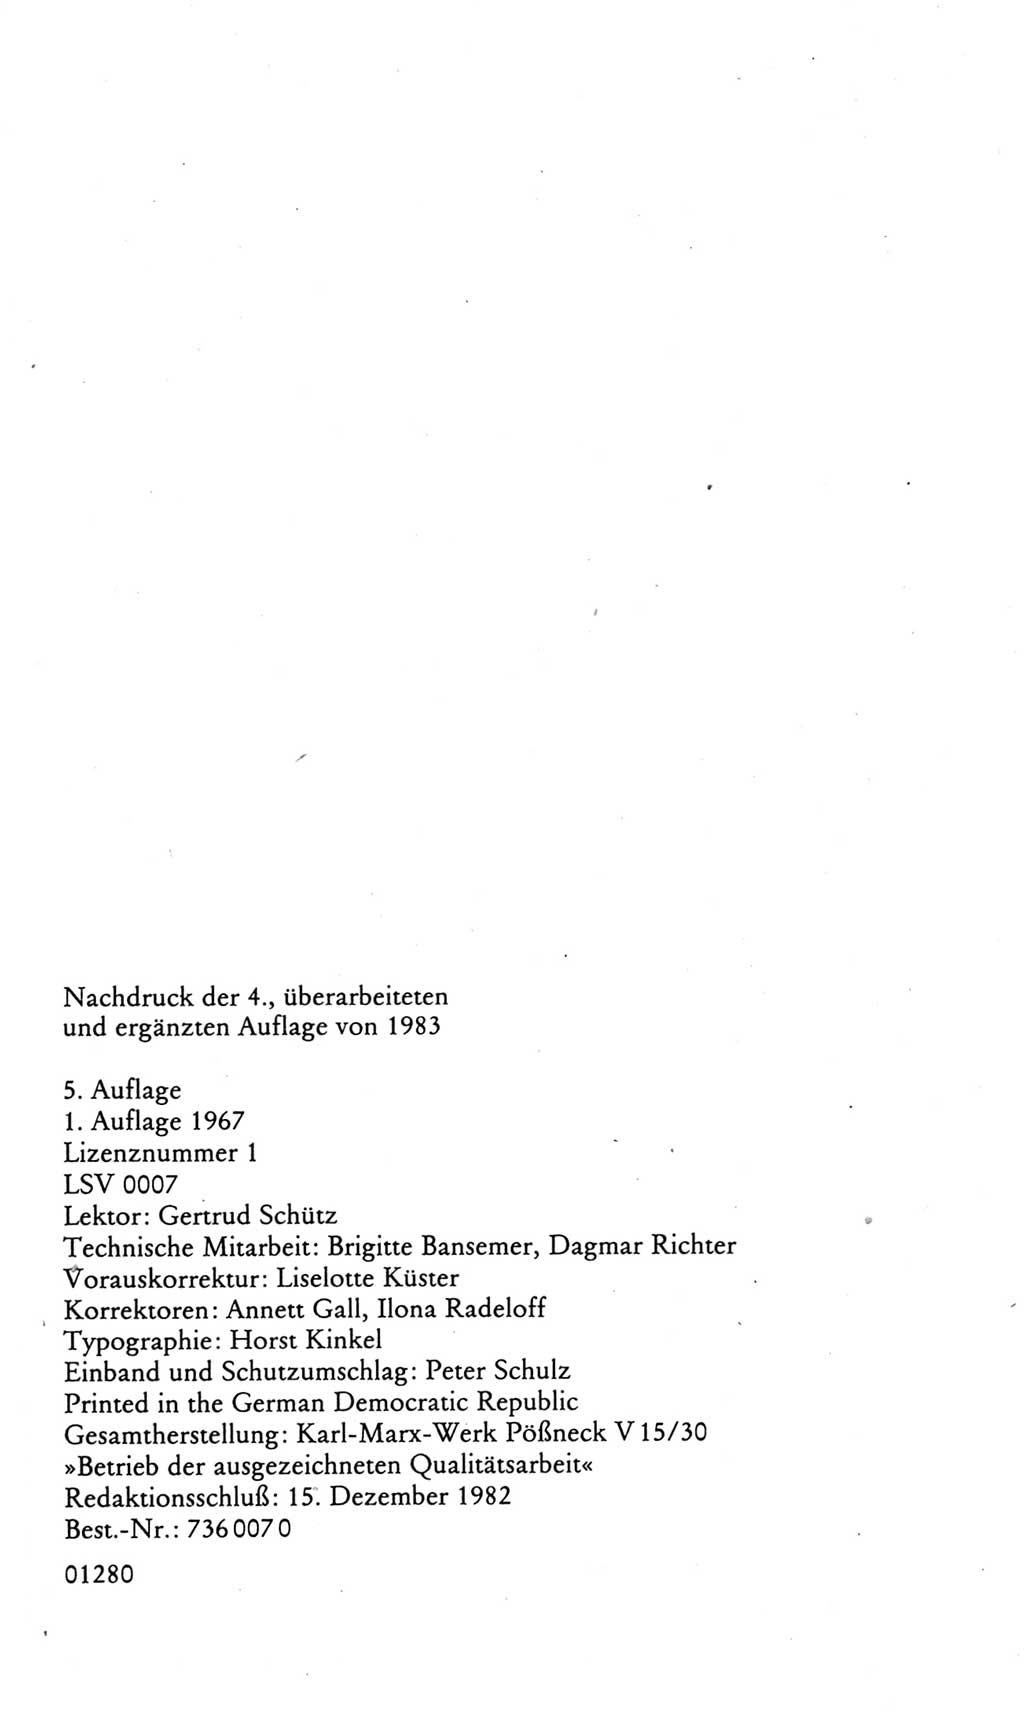 Kleines politisches Wörterbuch [Deutsche Demokratische Republik (DDR)] 1985, Seite 1134 (Kl. pol. Wb. DDR 1985, S. 1134)